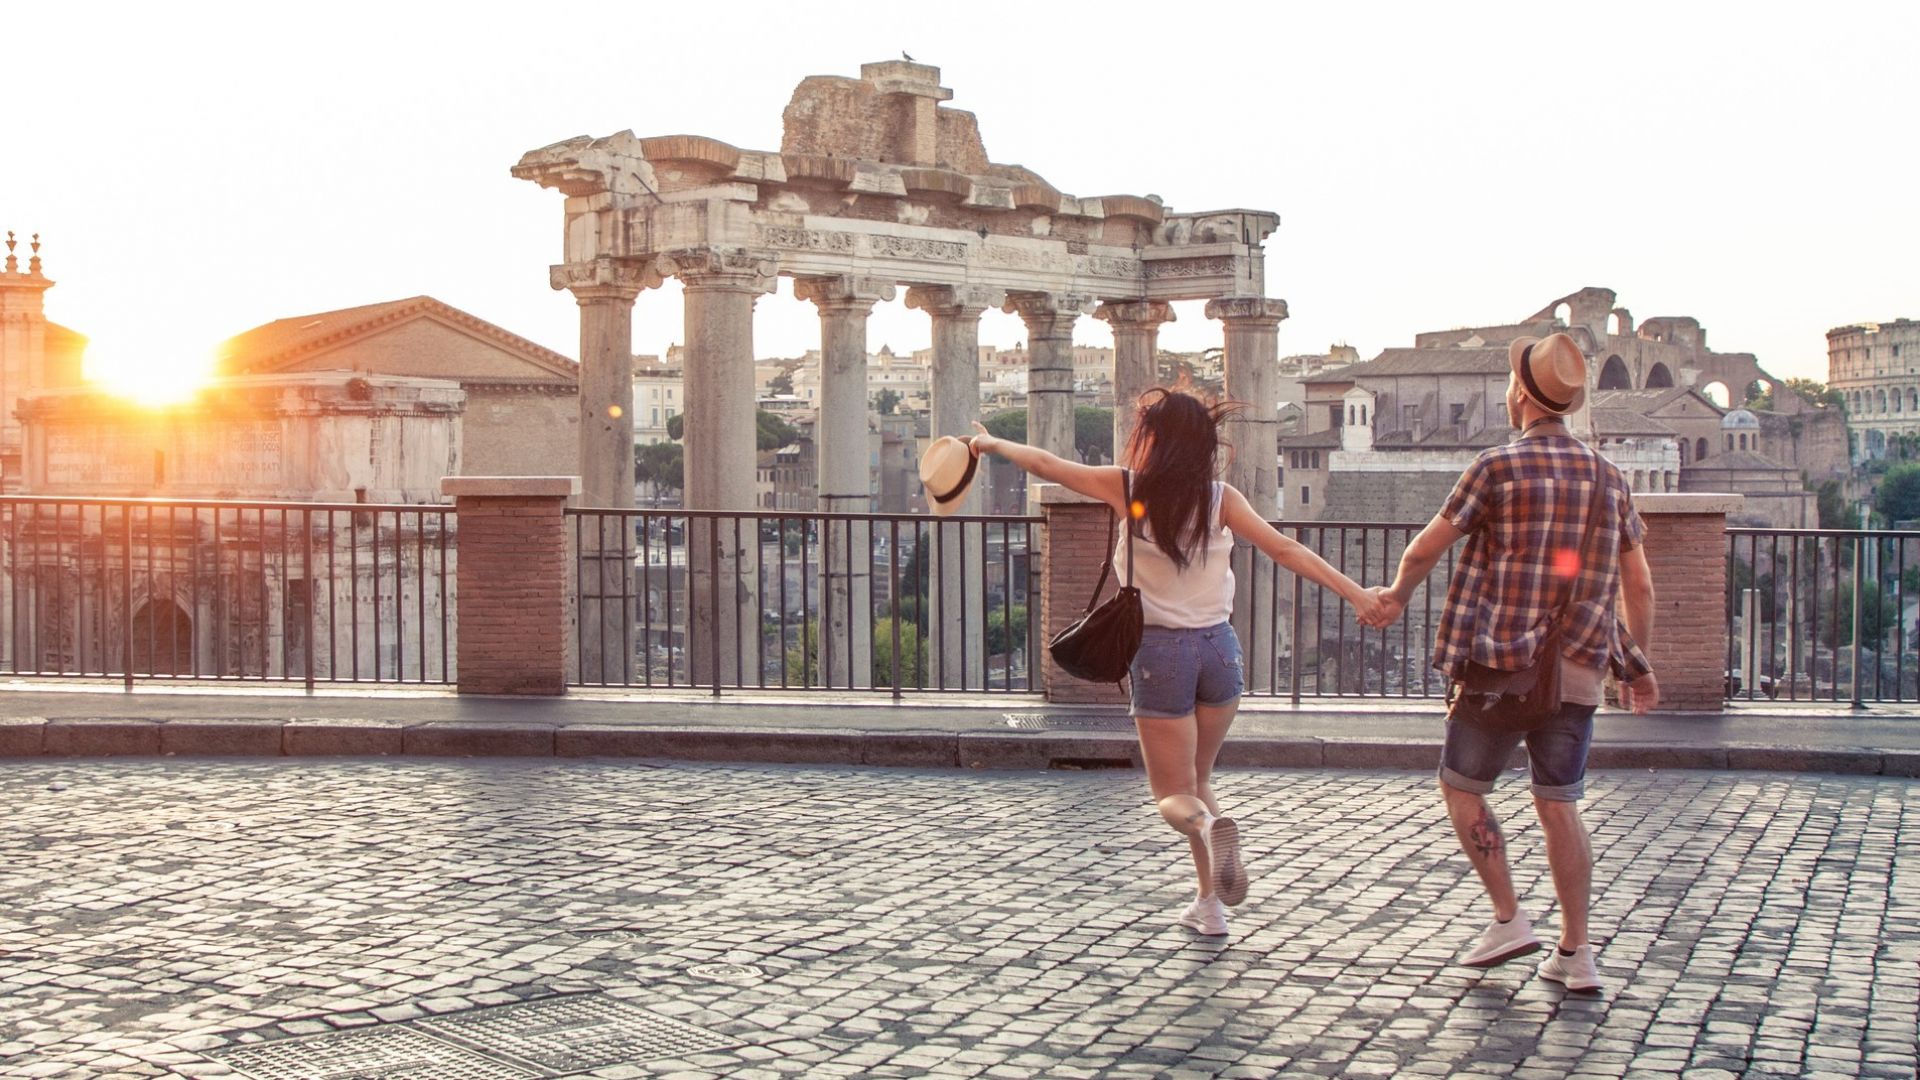 10 полезни съвета, ако пътувате в Италия за първи път